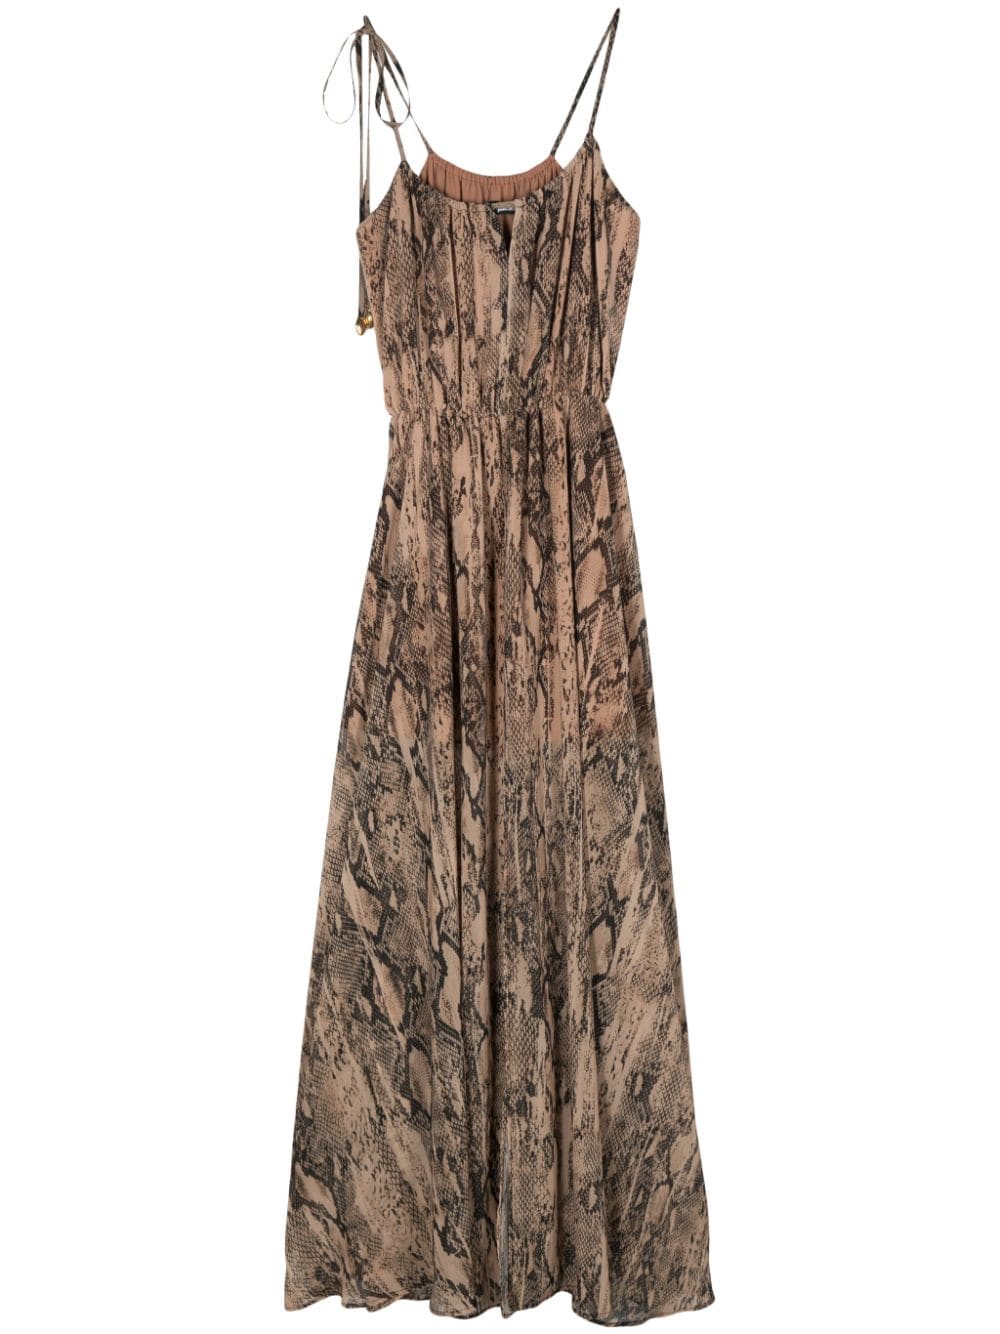 Just Cavalli snakeskin-print dress - Neutrals von Just Cavalli